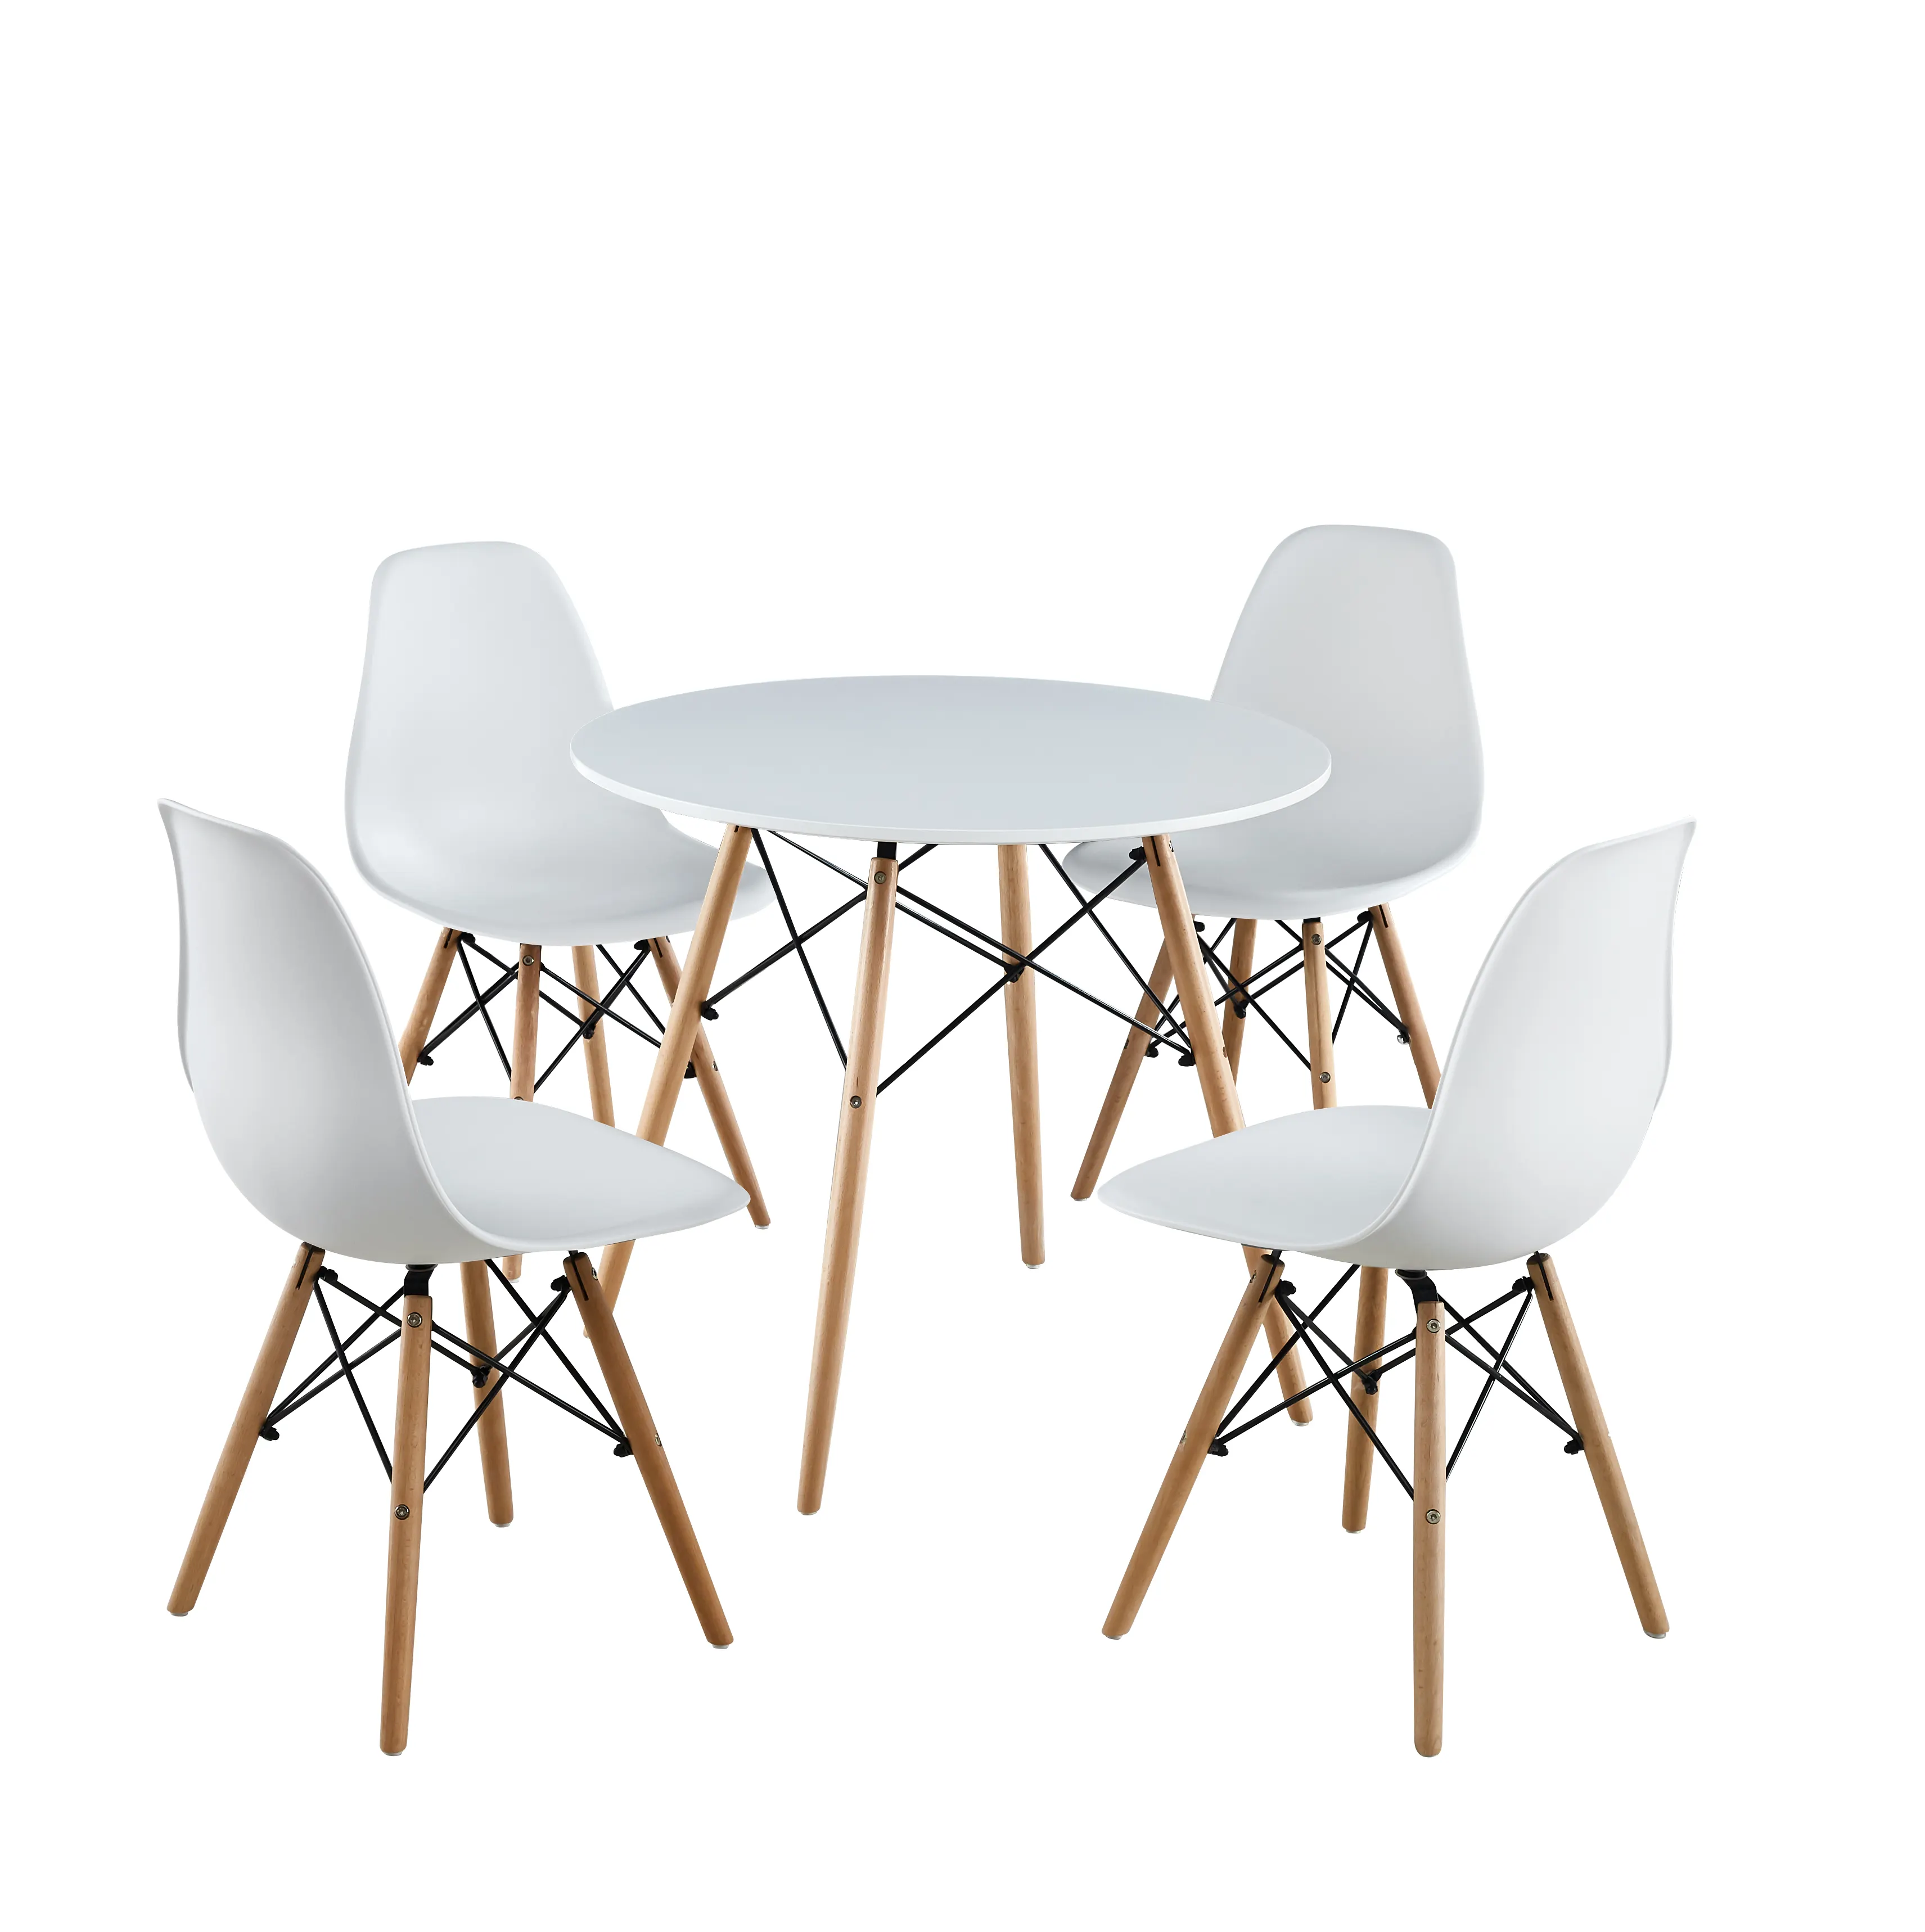 Высококачественные деревянные обеденные столы и стулья, прочные и встроенные, малазийский каучук